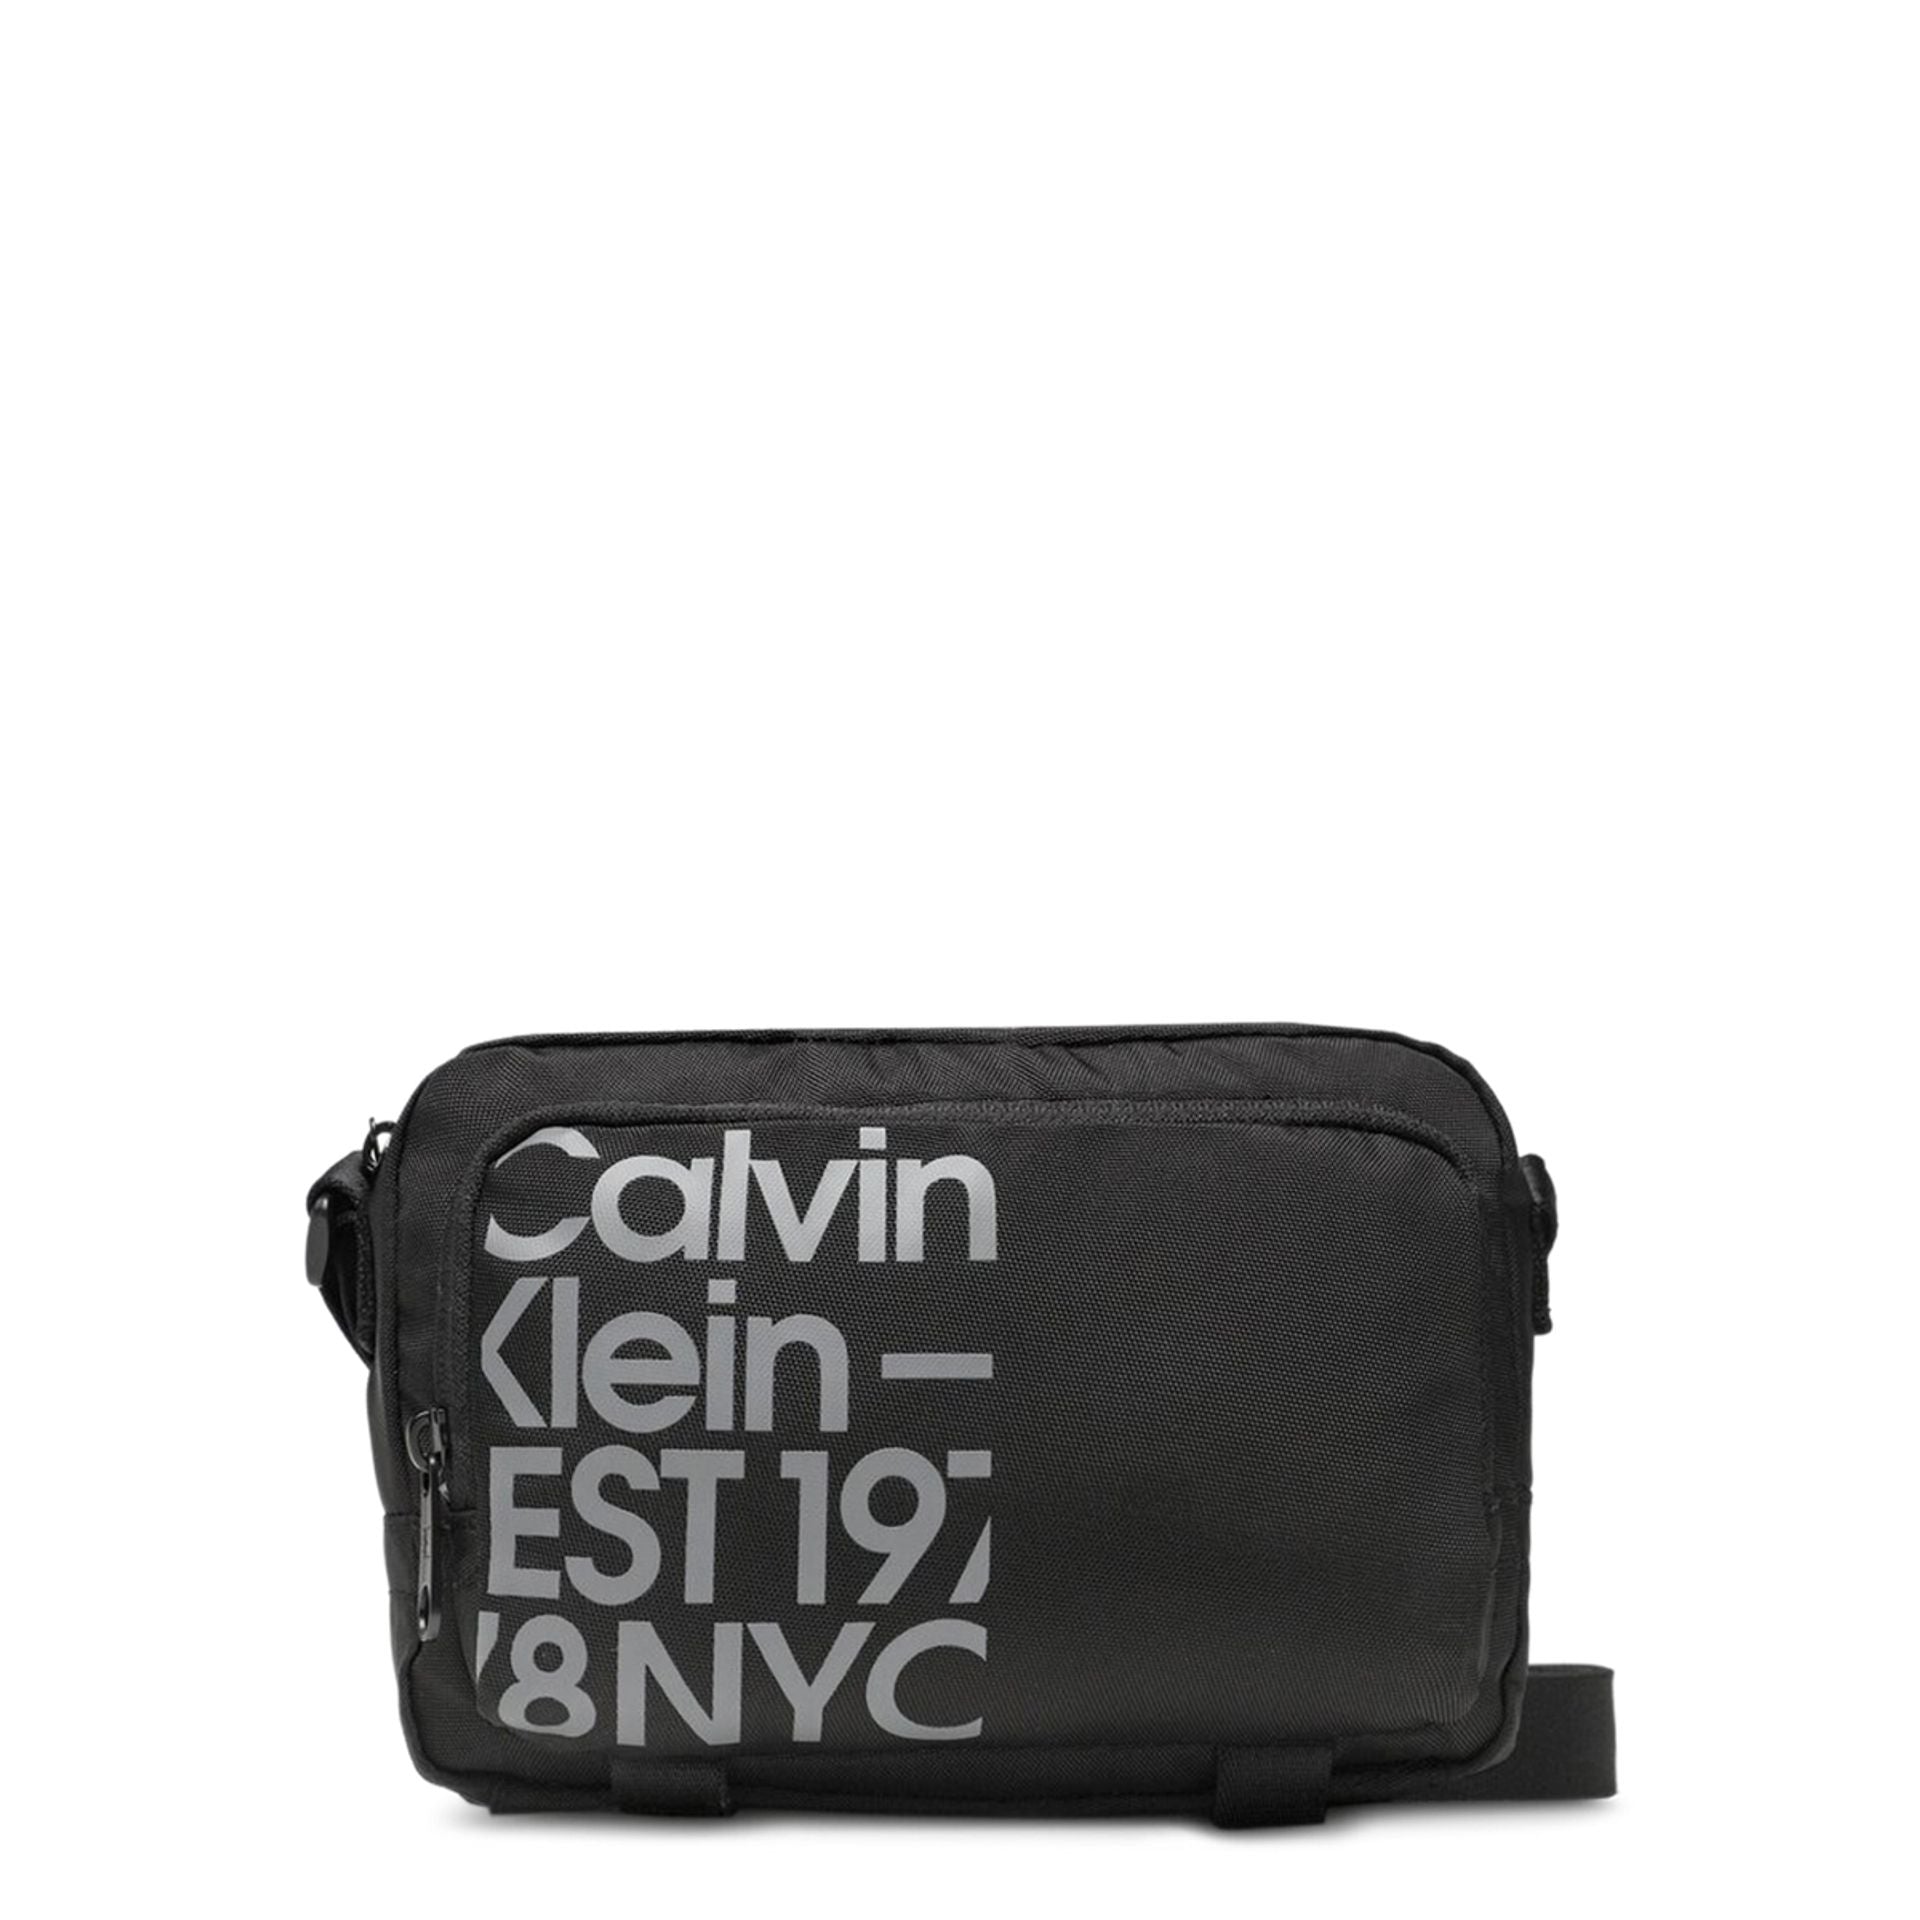 Calvin Klein презрамка